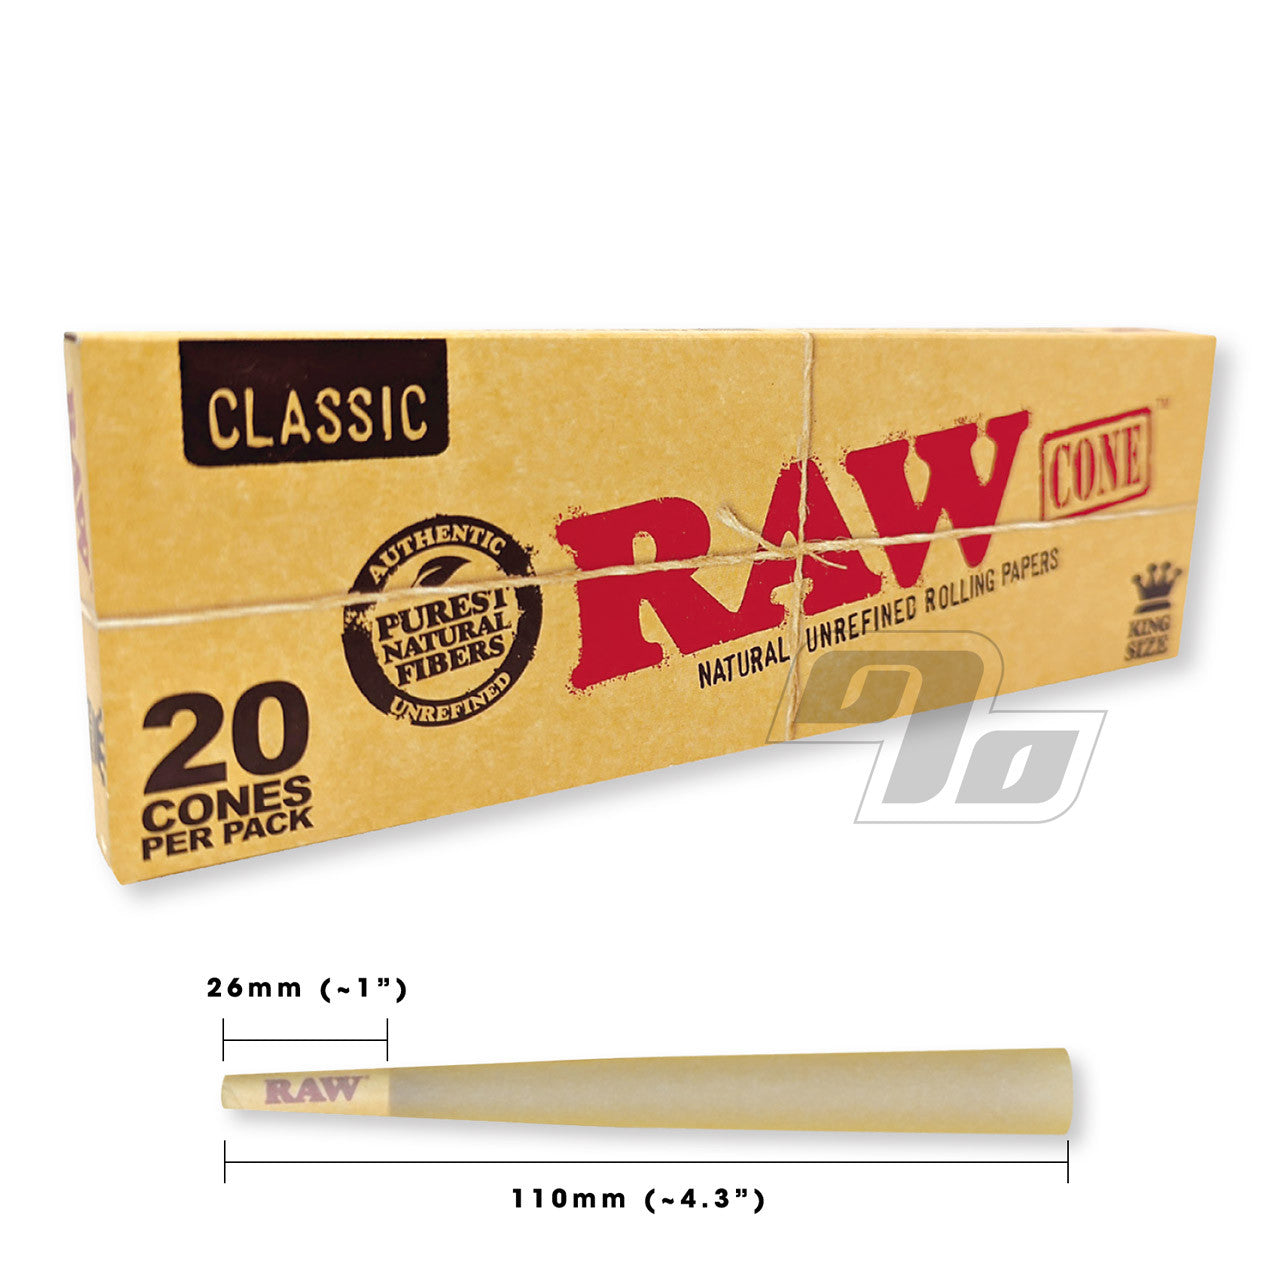 Raw Classic 20 Cones Per Pack